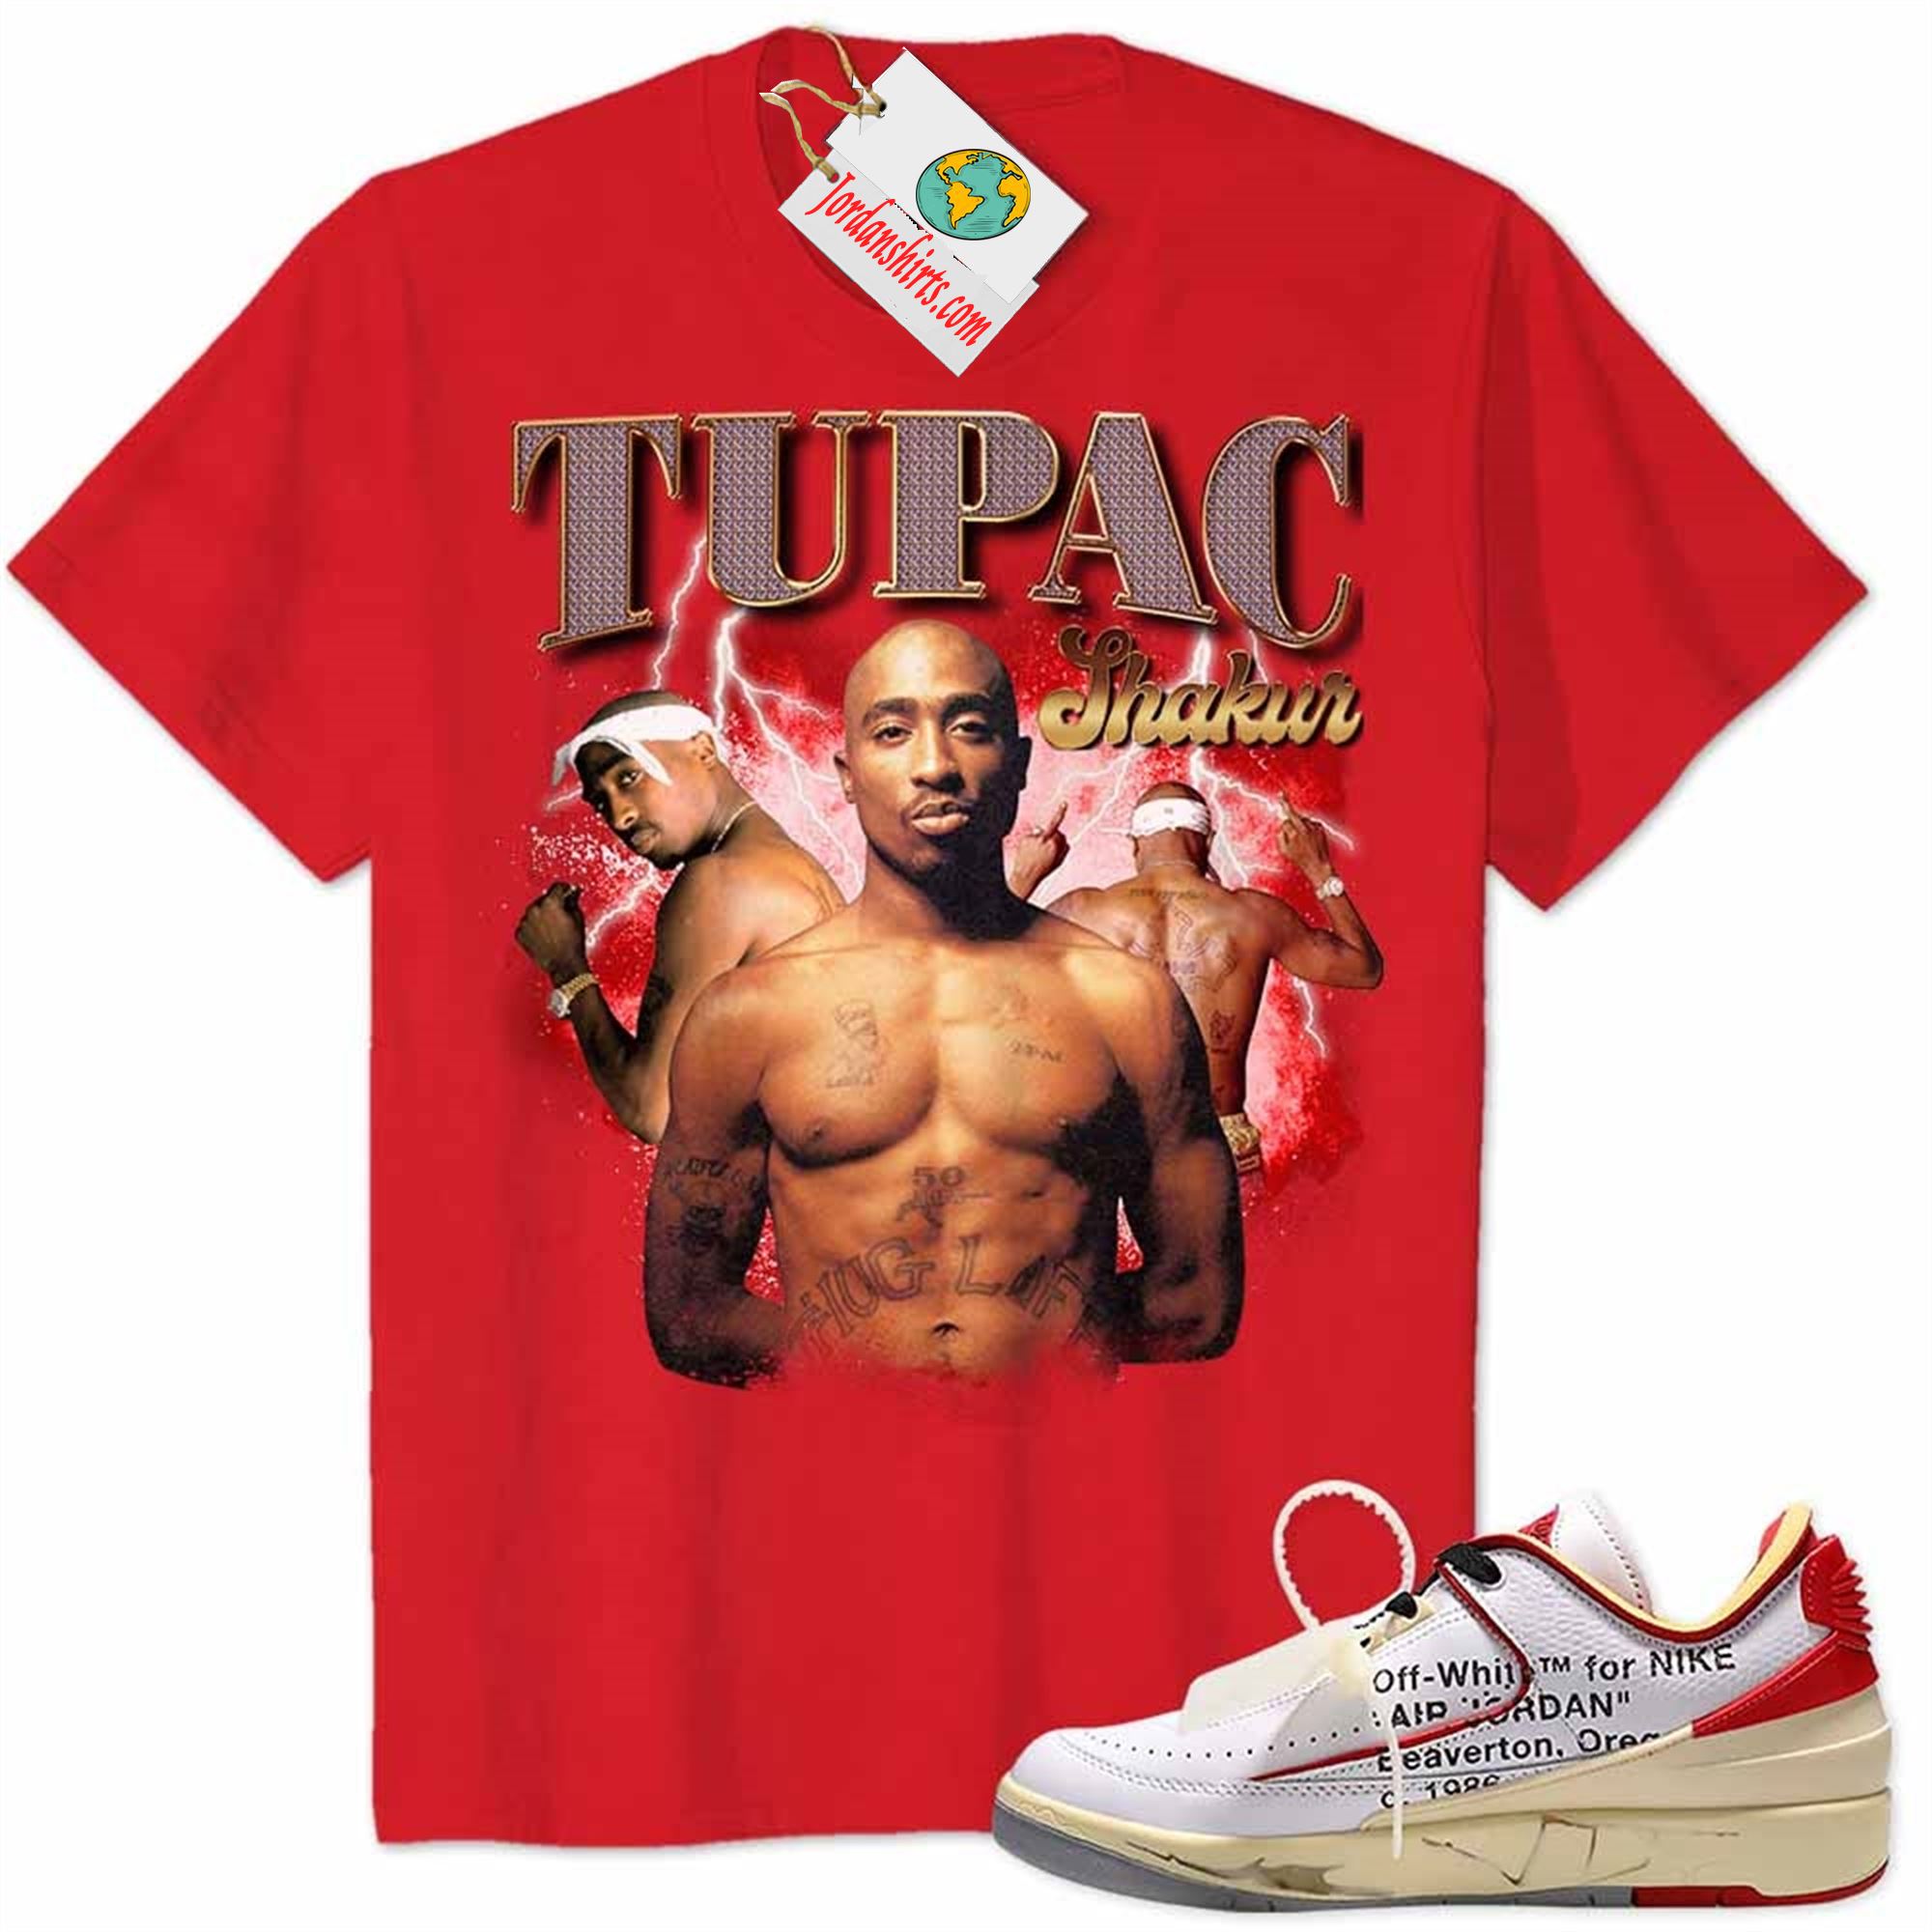 Jordan 2 Shirt, Tupac 2pac Shakur Graphic Red Air Jordan 2 Low White Red Off-white 2s Plus Size Up To 5xl